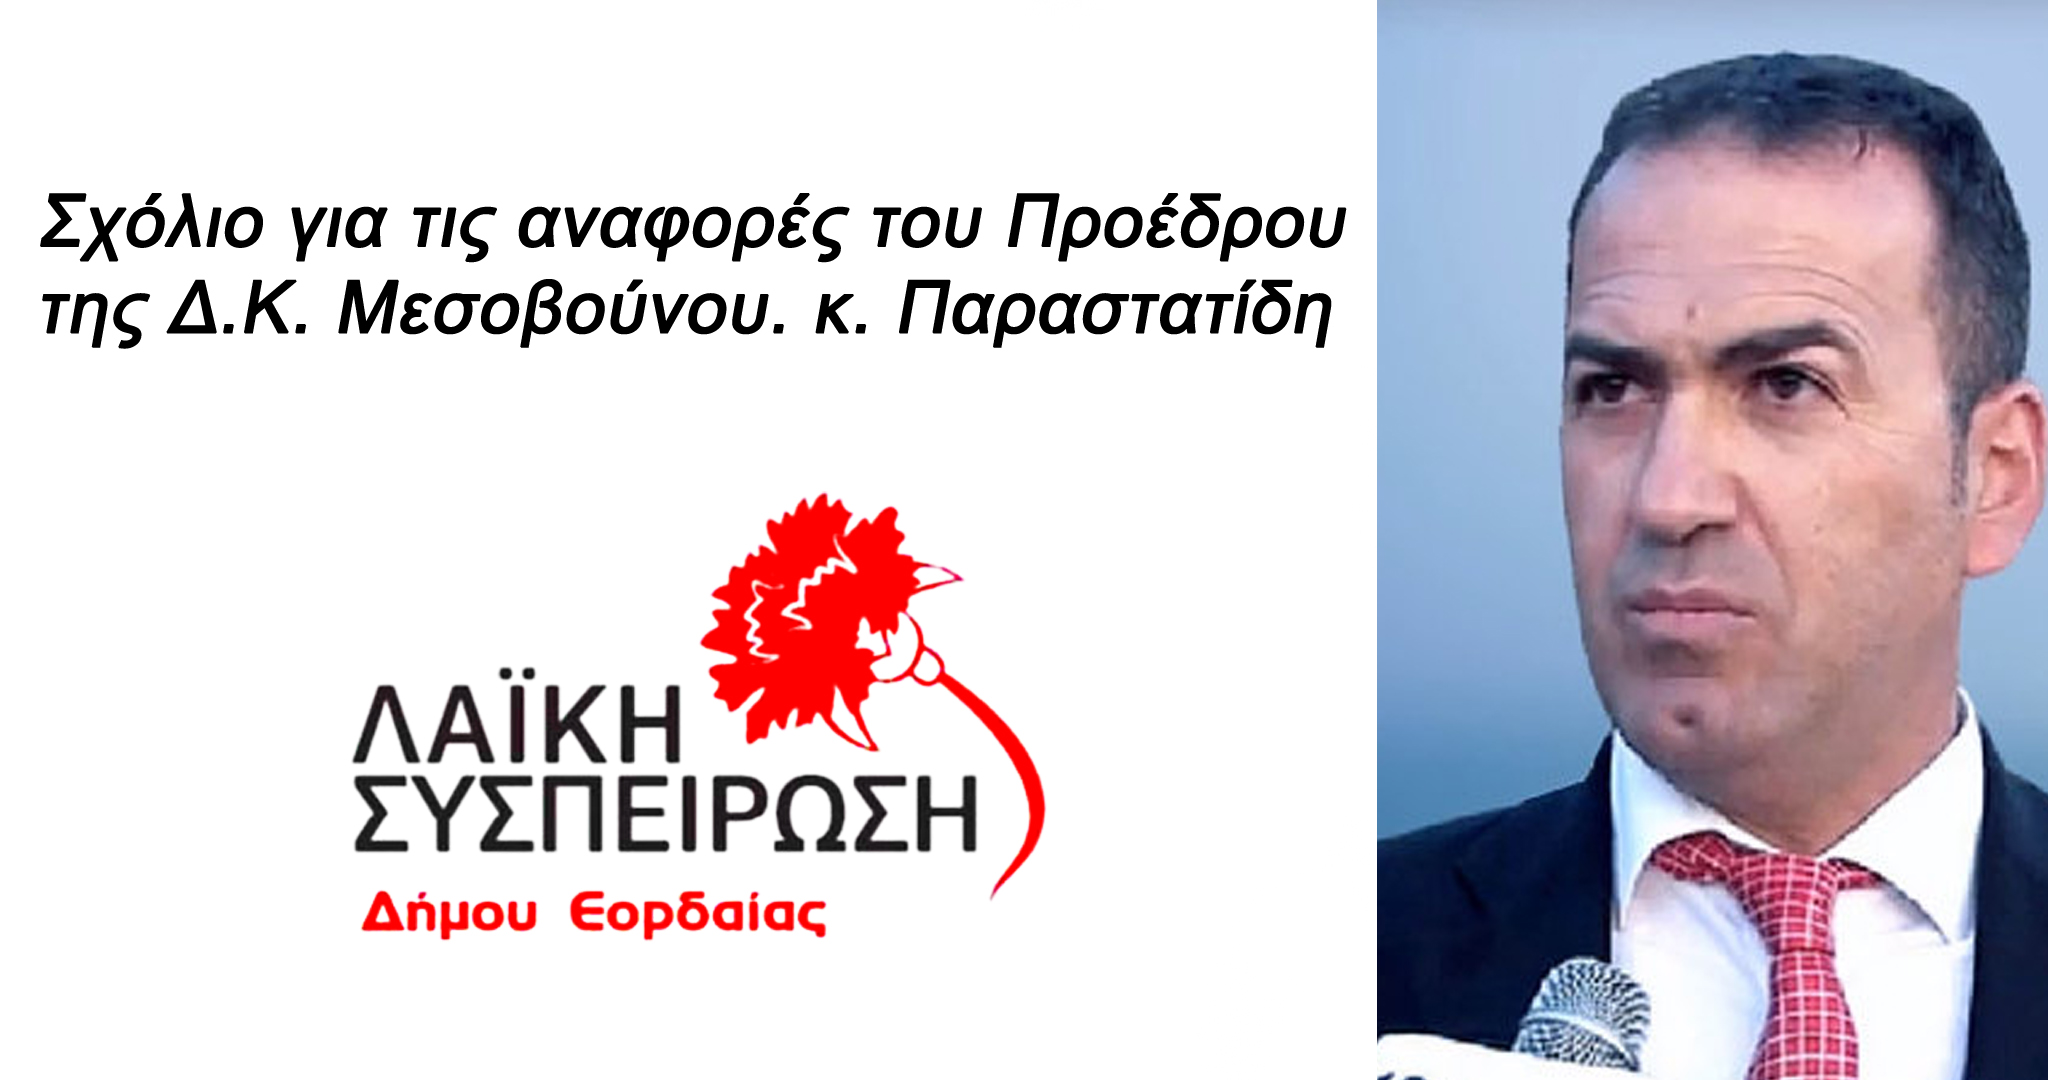 Σχόλιο για τις αναφορές του προέδρου της Δ.Κ. Μεσοβούνου